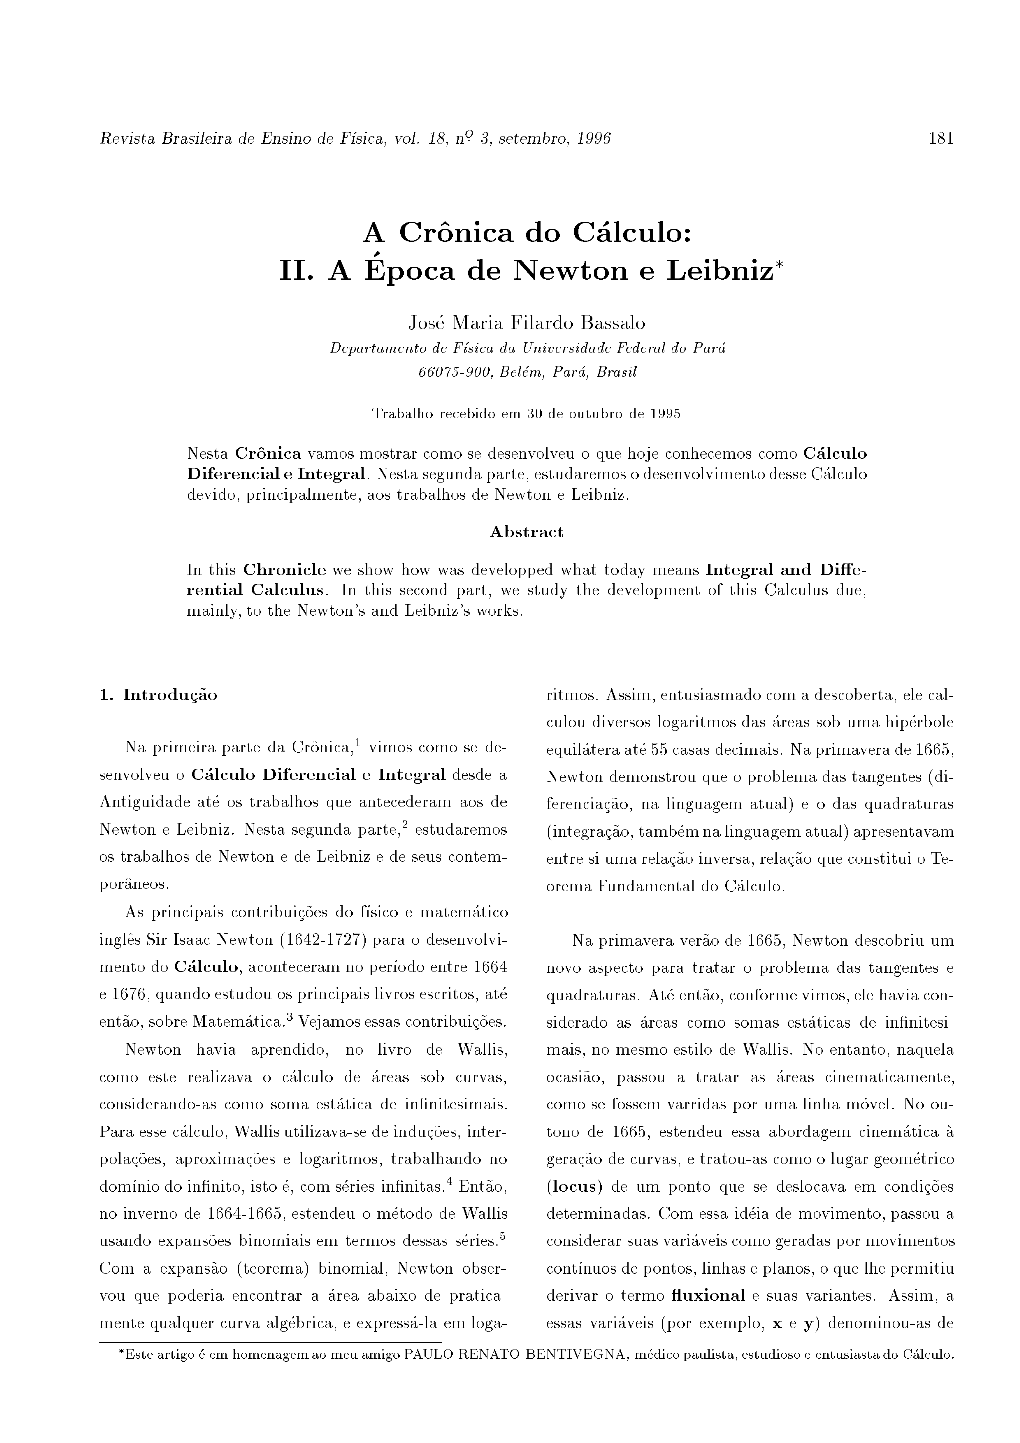 A Cr^Onica Do C Alculo: II. a Epoca De Newton E Leibniz